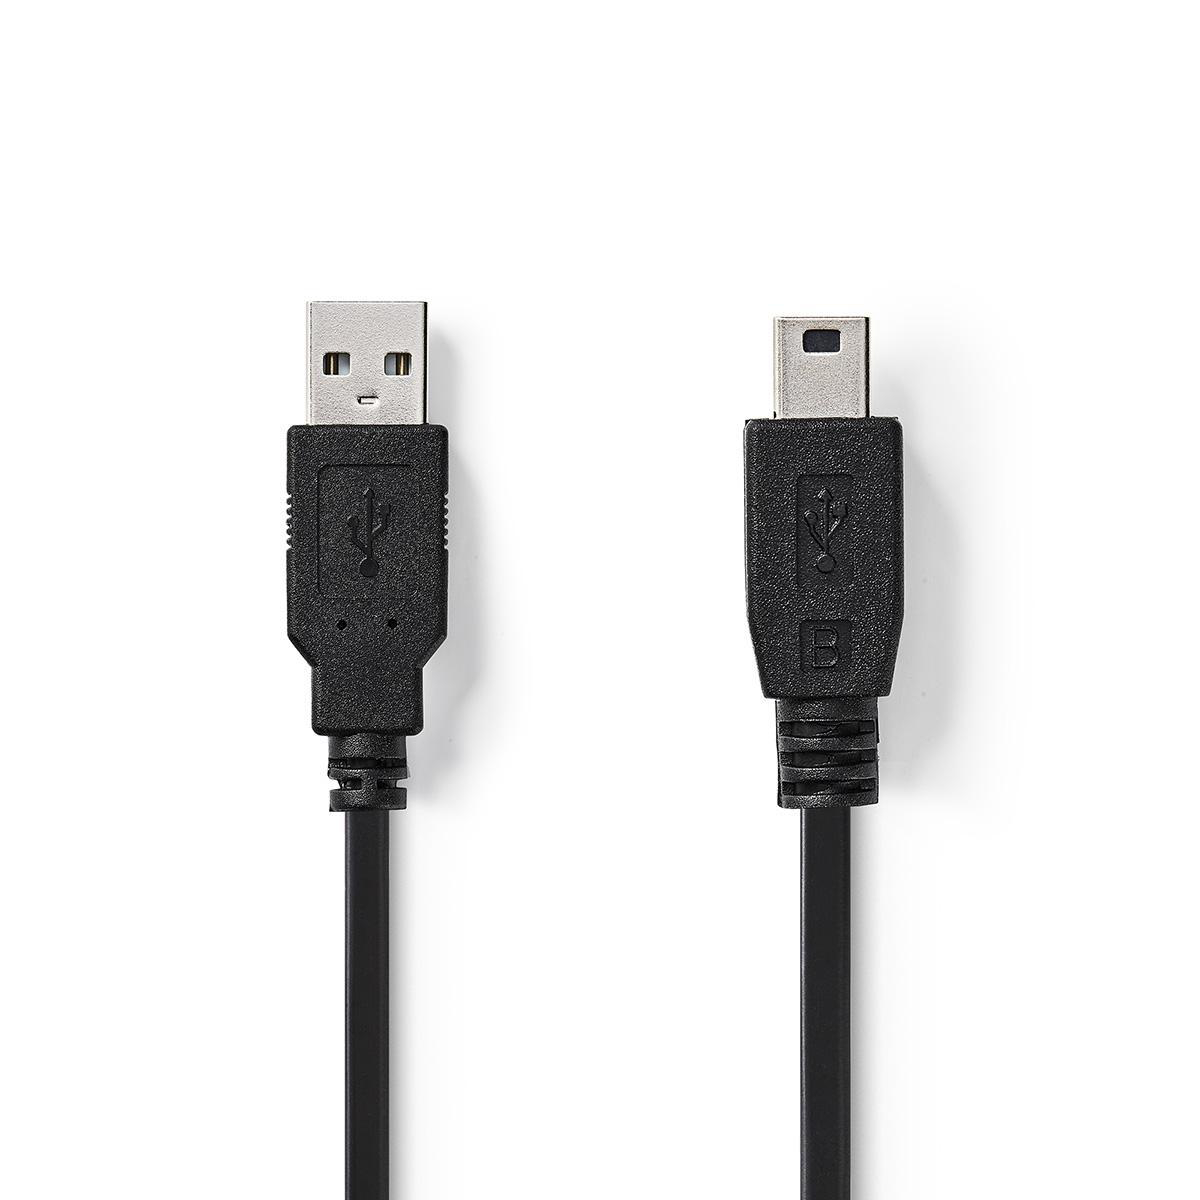 Nedis propojovací kabel USB 2.0 zástrčka USB A - zástrčka USB mini B 5-pin, 2 m (CCGT60300BK20)